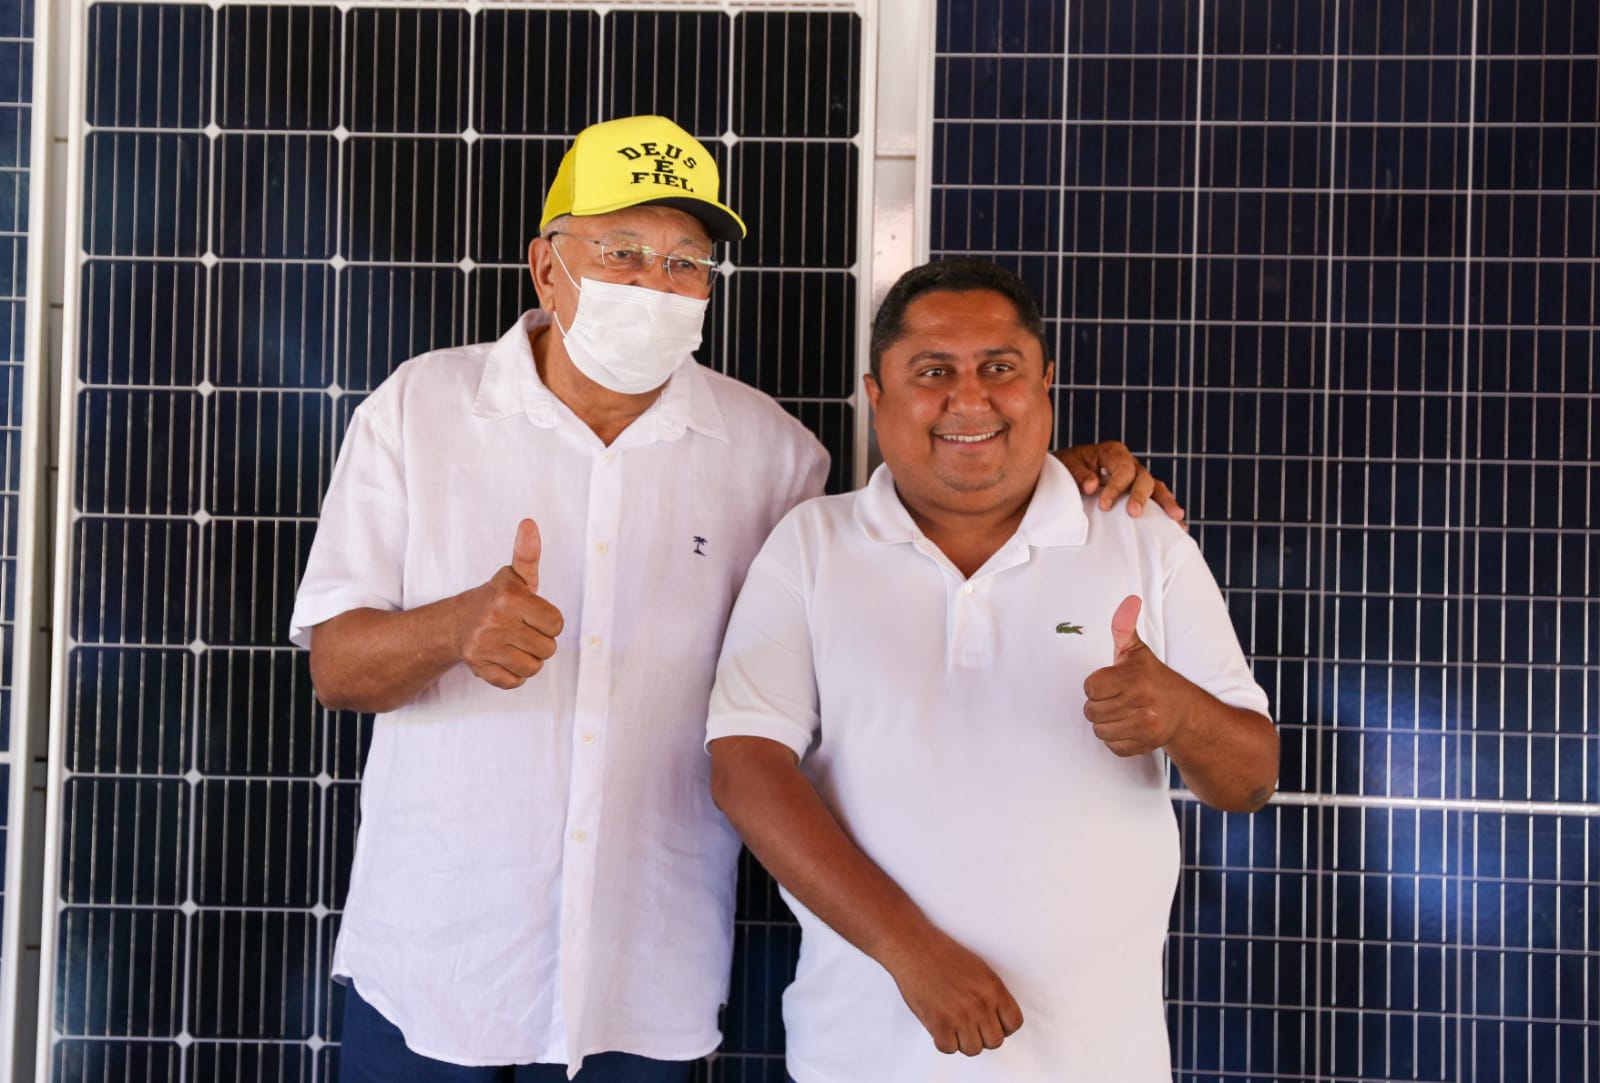 Dr. Pessoa e Maykon Silva durante a aula inaugural do curso sobre energia solar